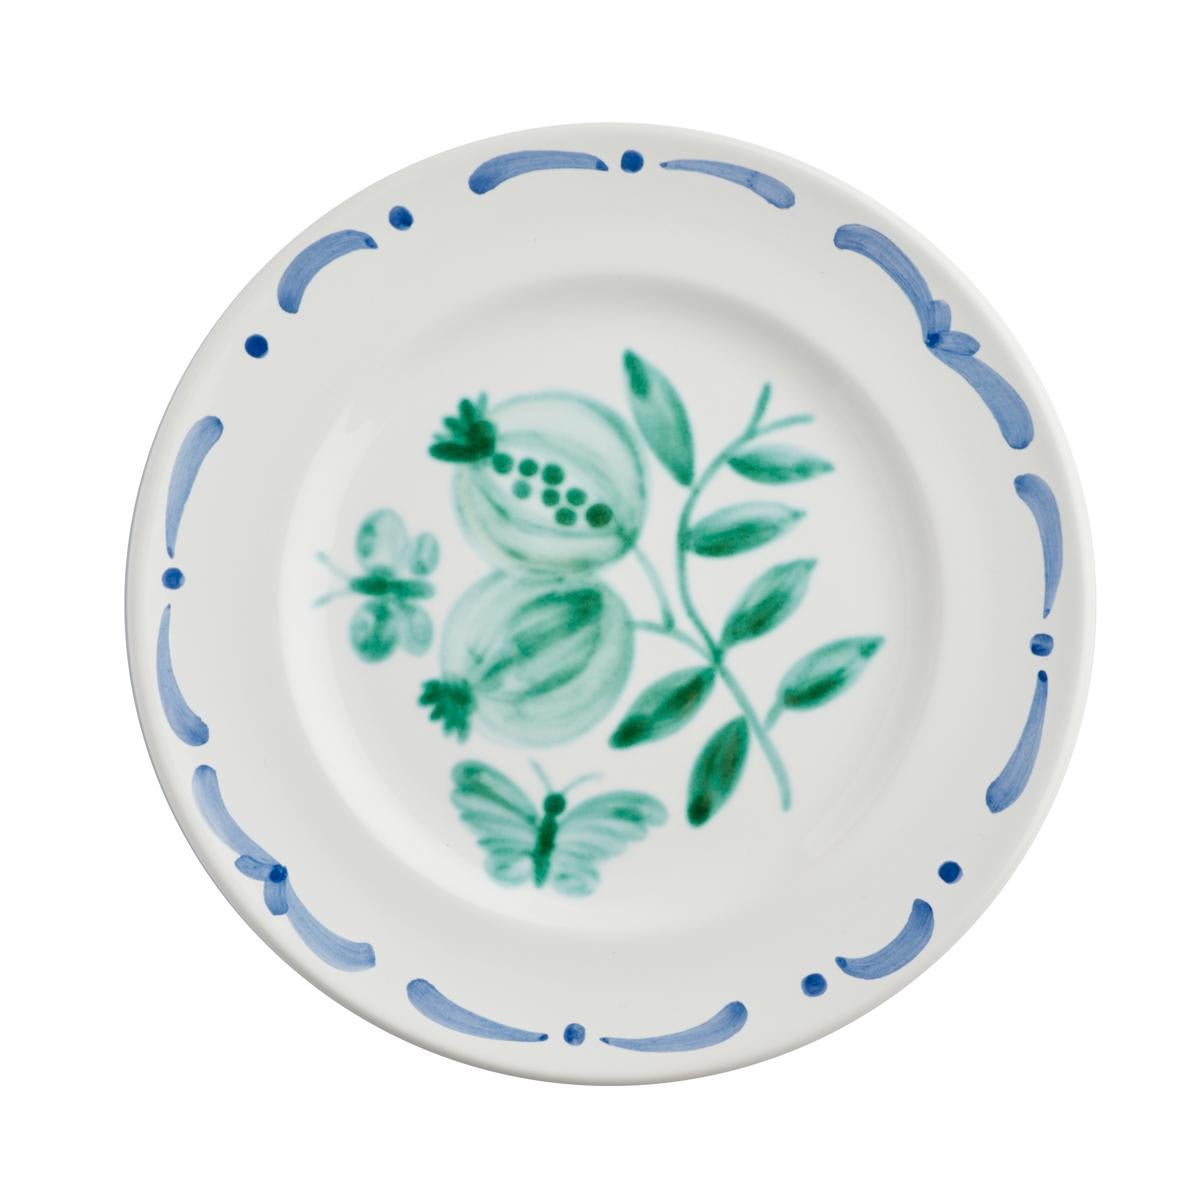 Set aus sechs handbemalten Keramik-Tellern im Landhausstil. Verziert mit einem handgemalten grünen Granatapfeldekor in der Mitte und einer freihändig gemalten Girlande in Blau. Die Girlande kann in verschiedenen Farben bestellt werden. Hergestellt